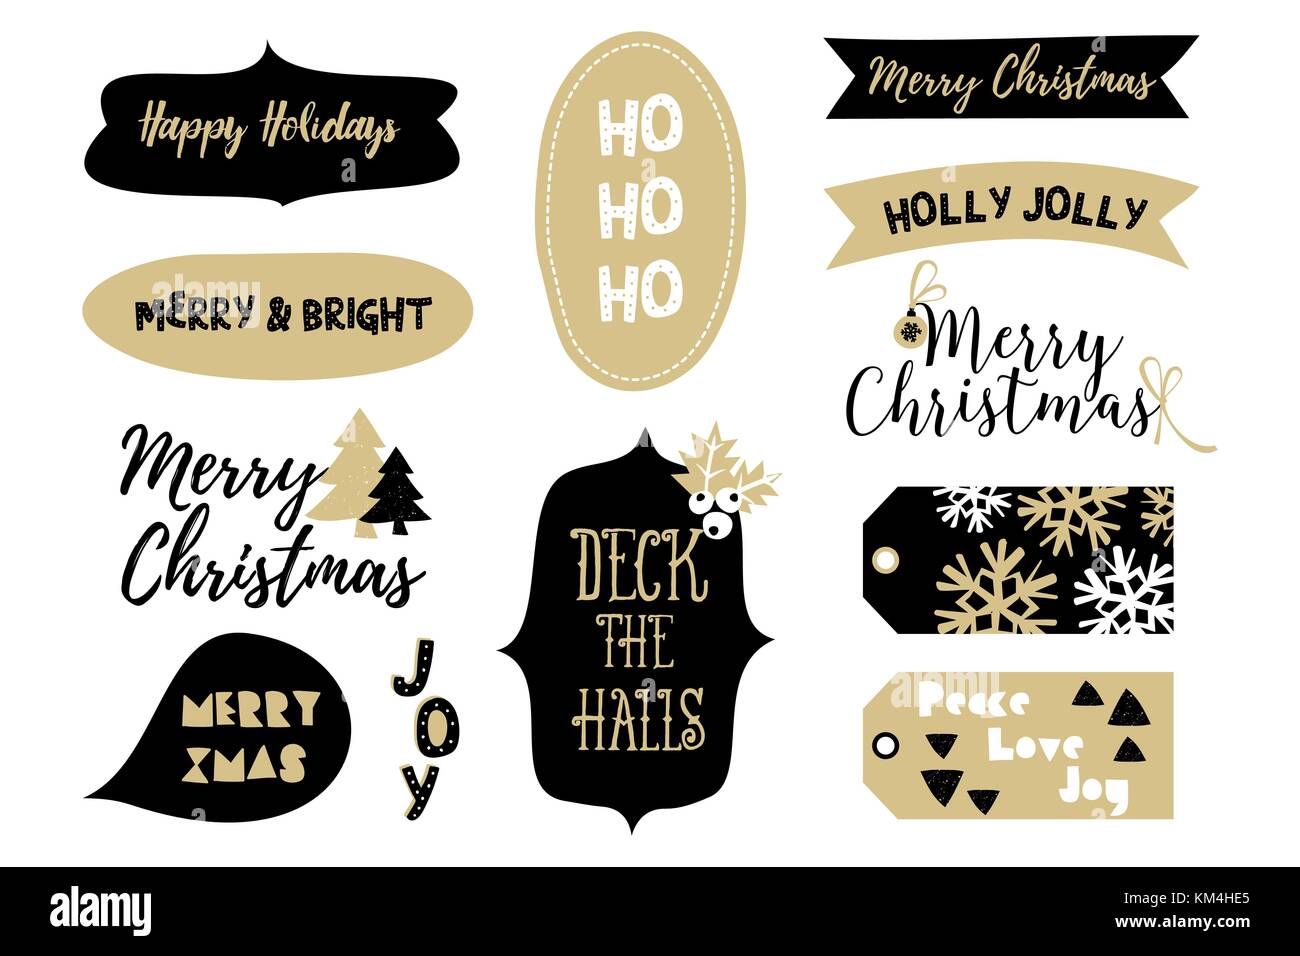 Eine Reihe von typographischen Stil Weihnachten Design Elemente in schwarzen und goldenen auf weißem Hintergrund. Stock Vektor